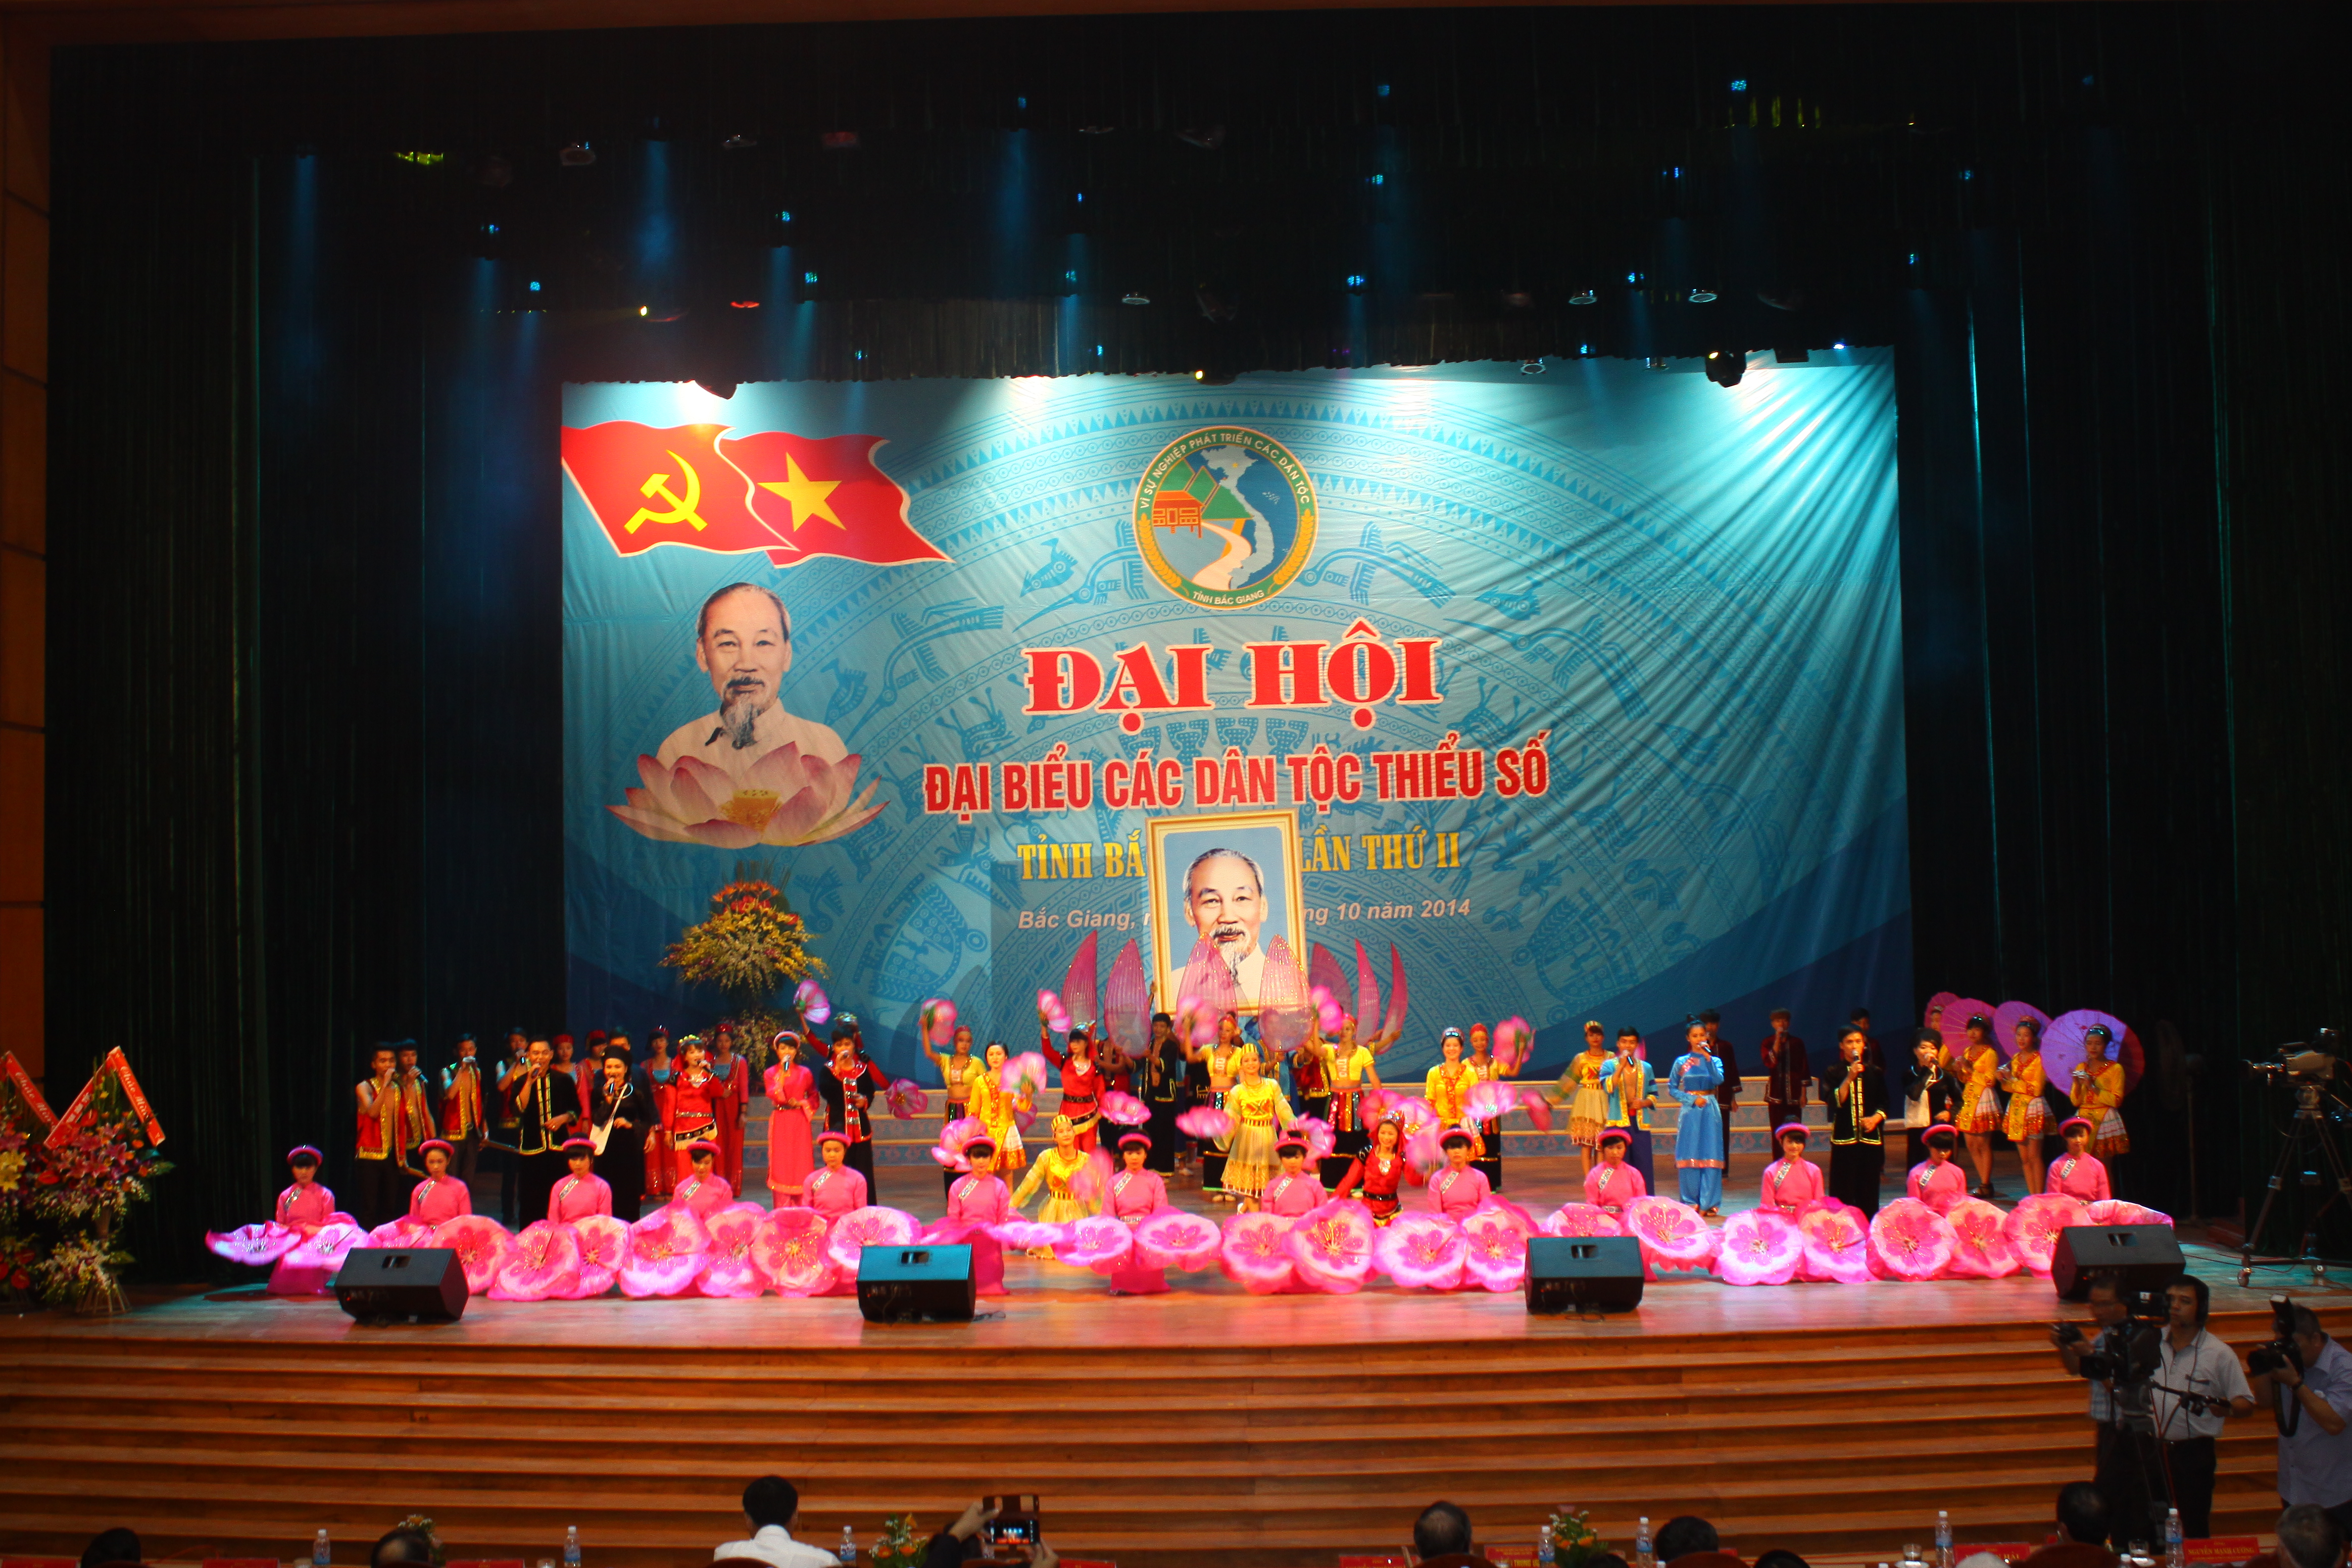 Đại hội đại biểu các dân tộc thiểu số tỉnh Bắc Giang lần thứ II